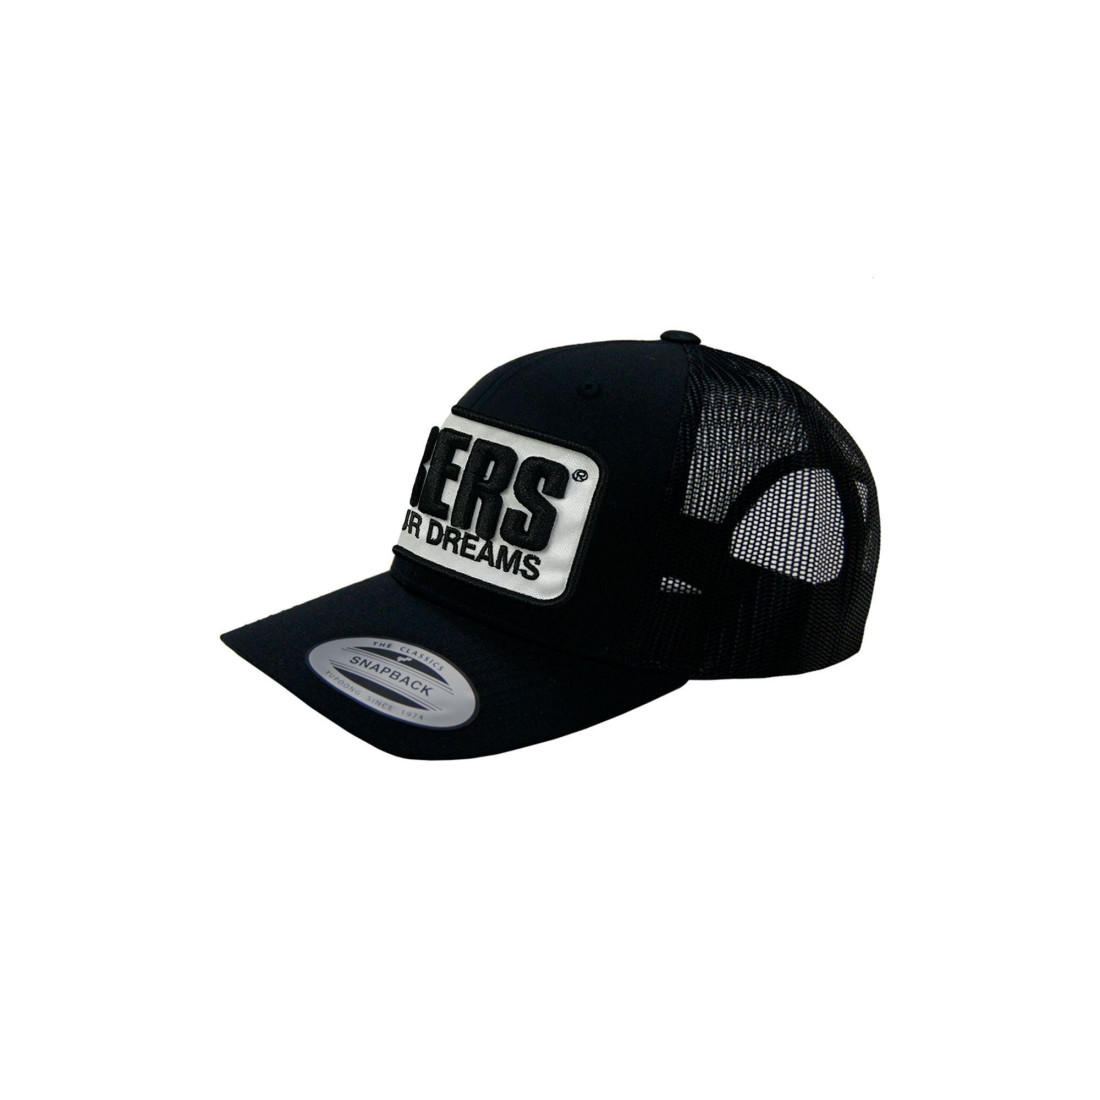 TRUCKER PATCH HAT - Color Black